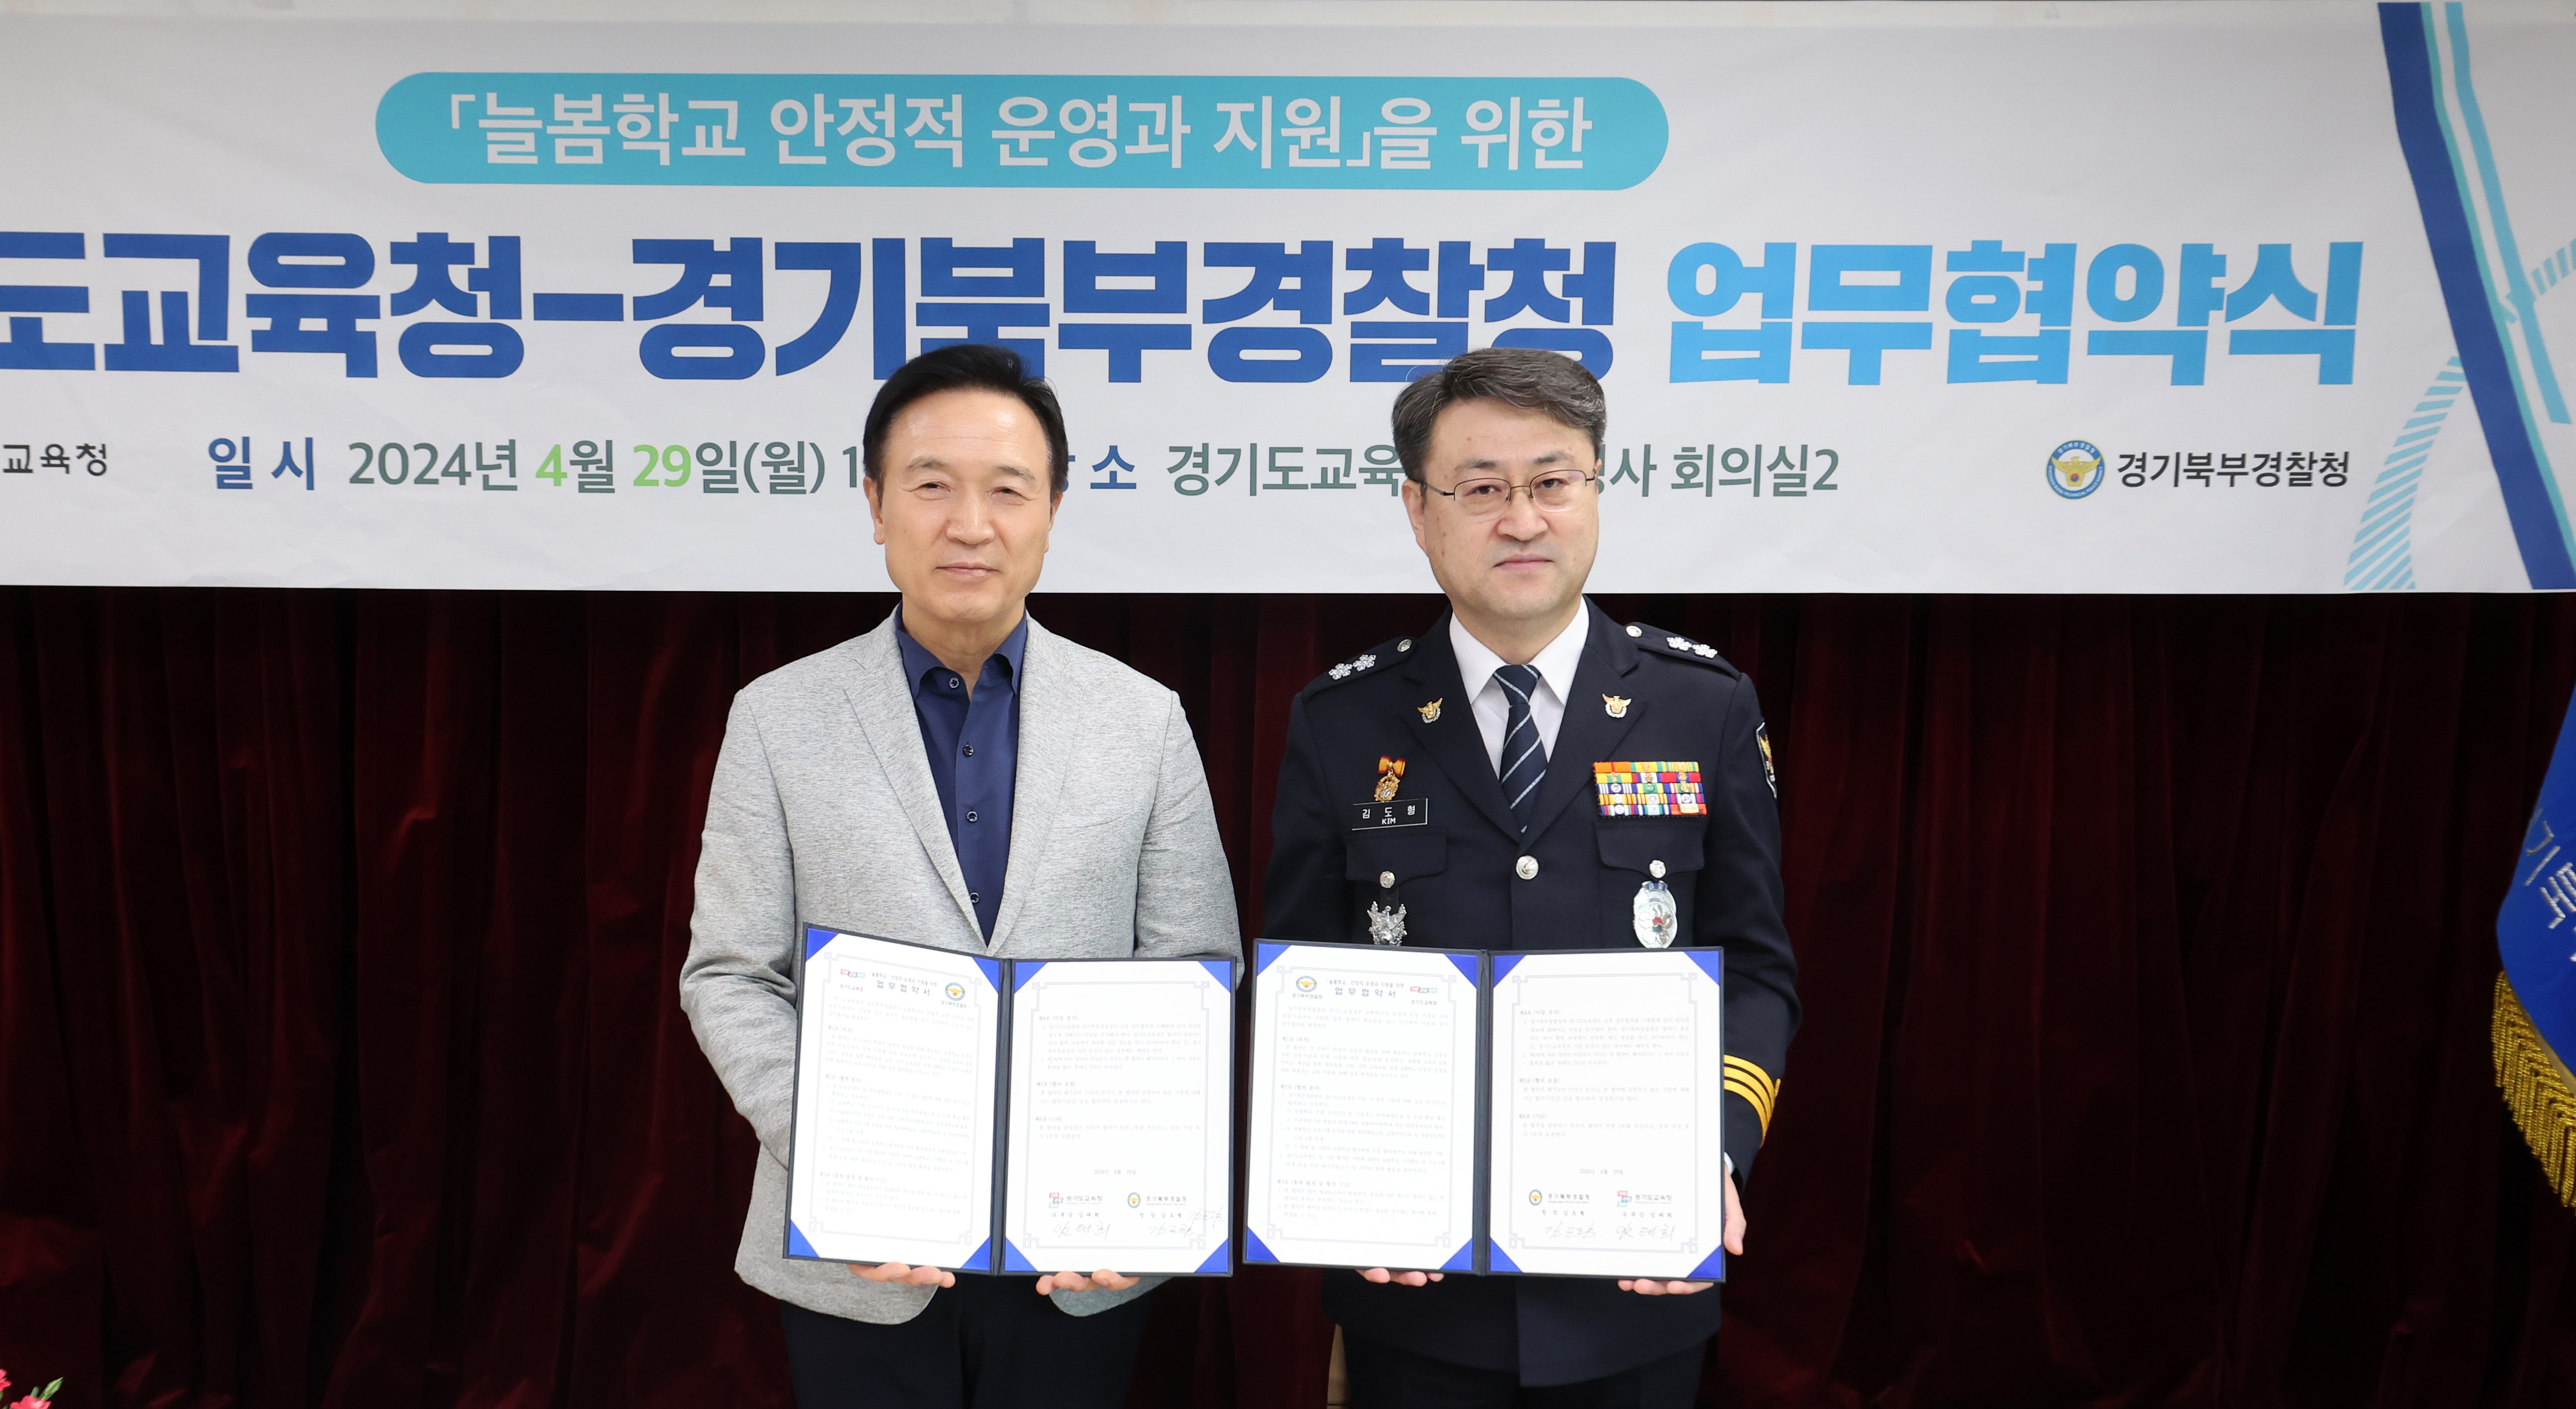 경기도교육청-경기북부경찰청, ‘안전한 늘봄학교’ 구축 업무협약